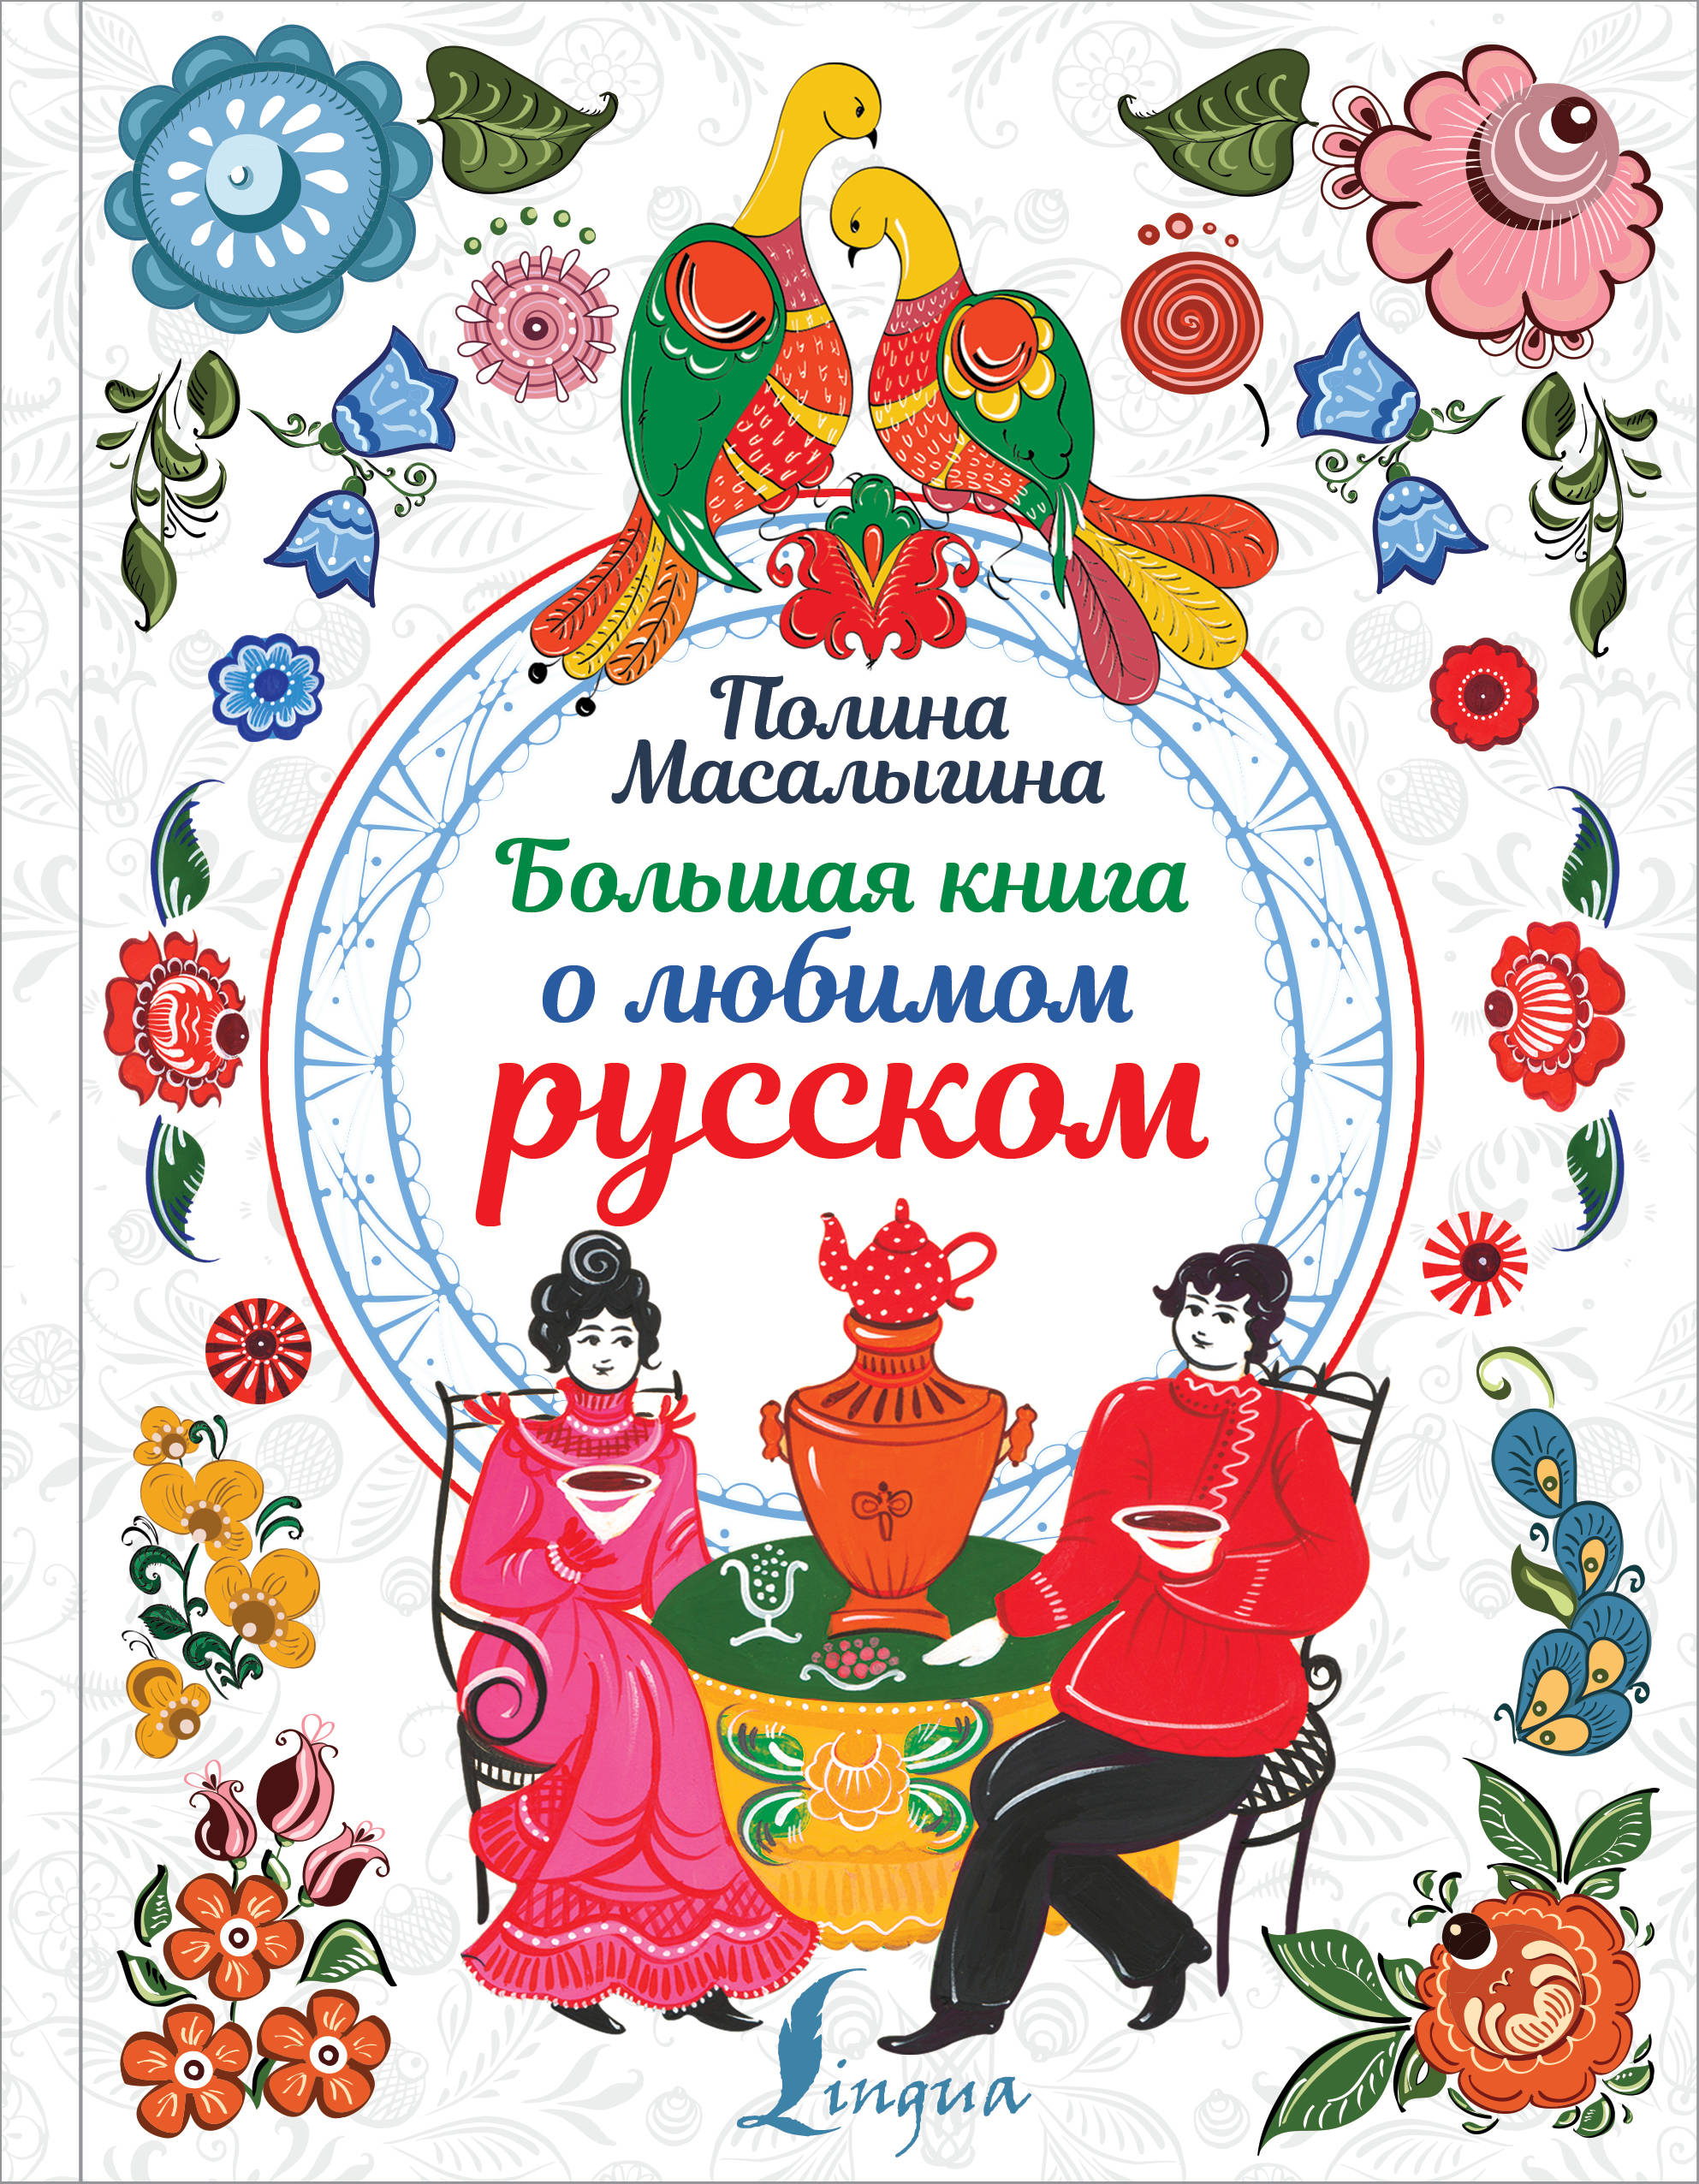 Масалыгина Полина Николаевна - Большая книга о любимом русском